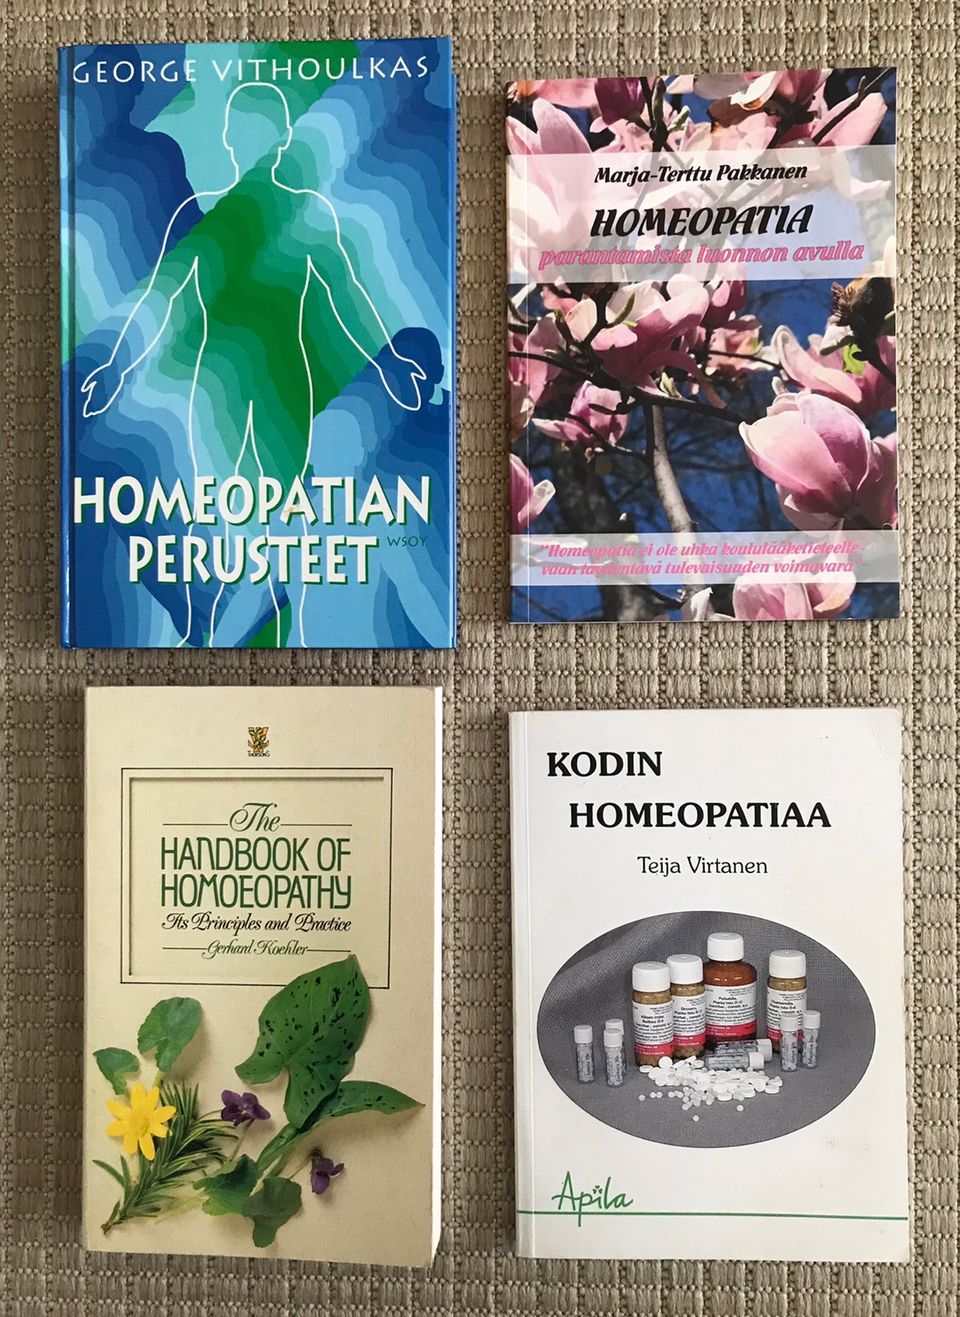 Homeopatia kirjallisuutta